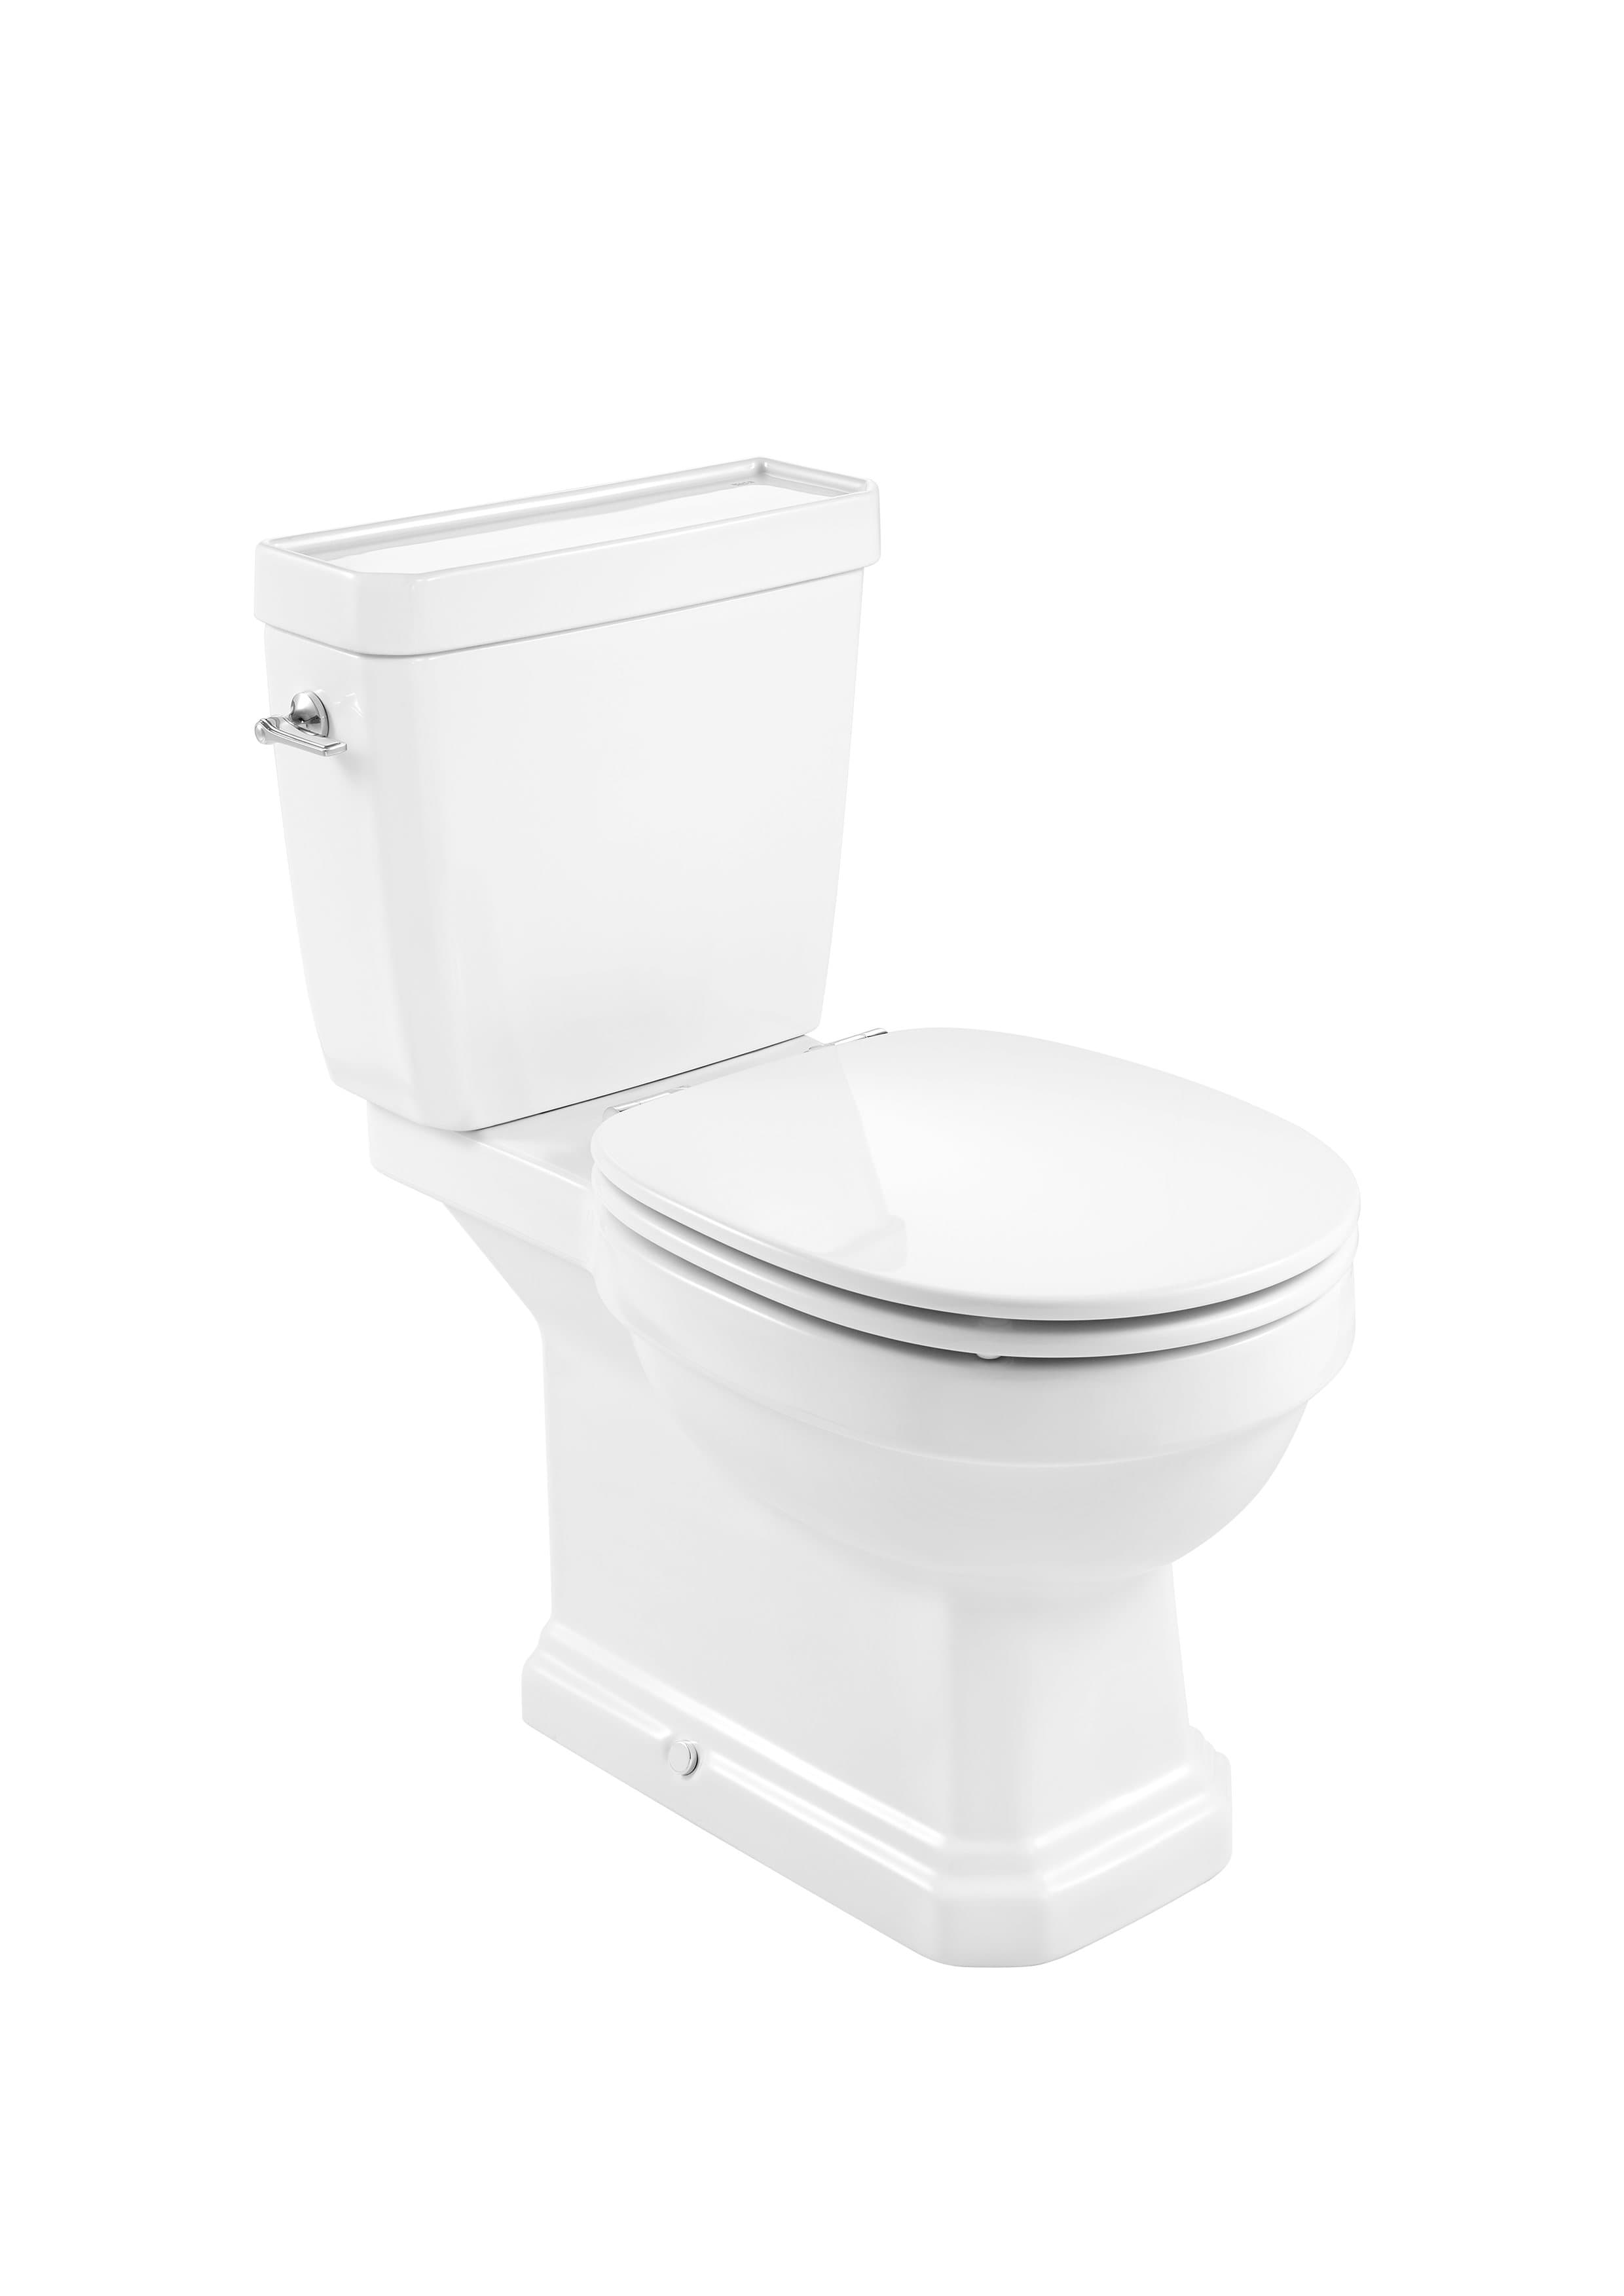 Sanitaire WC CARMEN A801B5200B Abattant double laqué frein de chute Roca 4 - Mirage ceramica